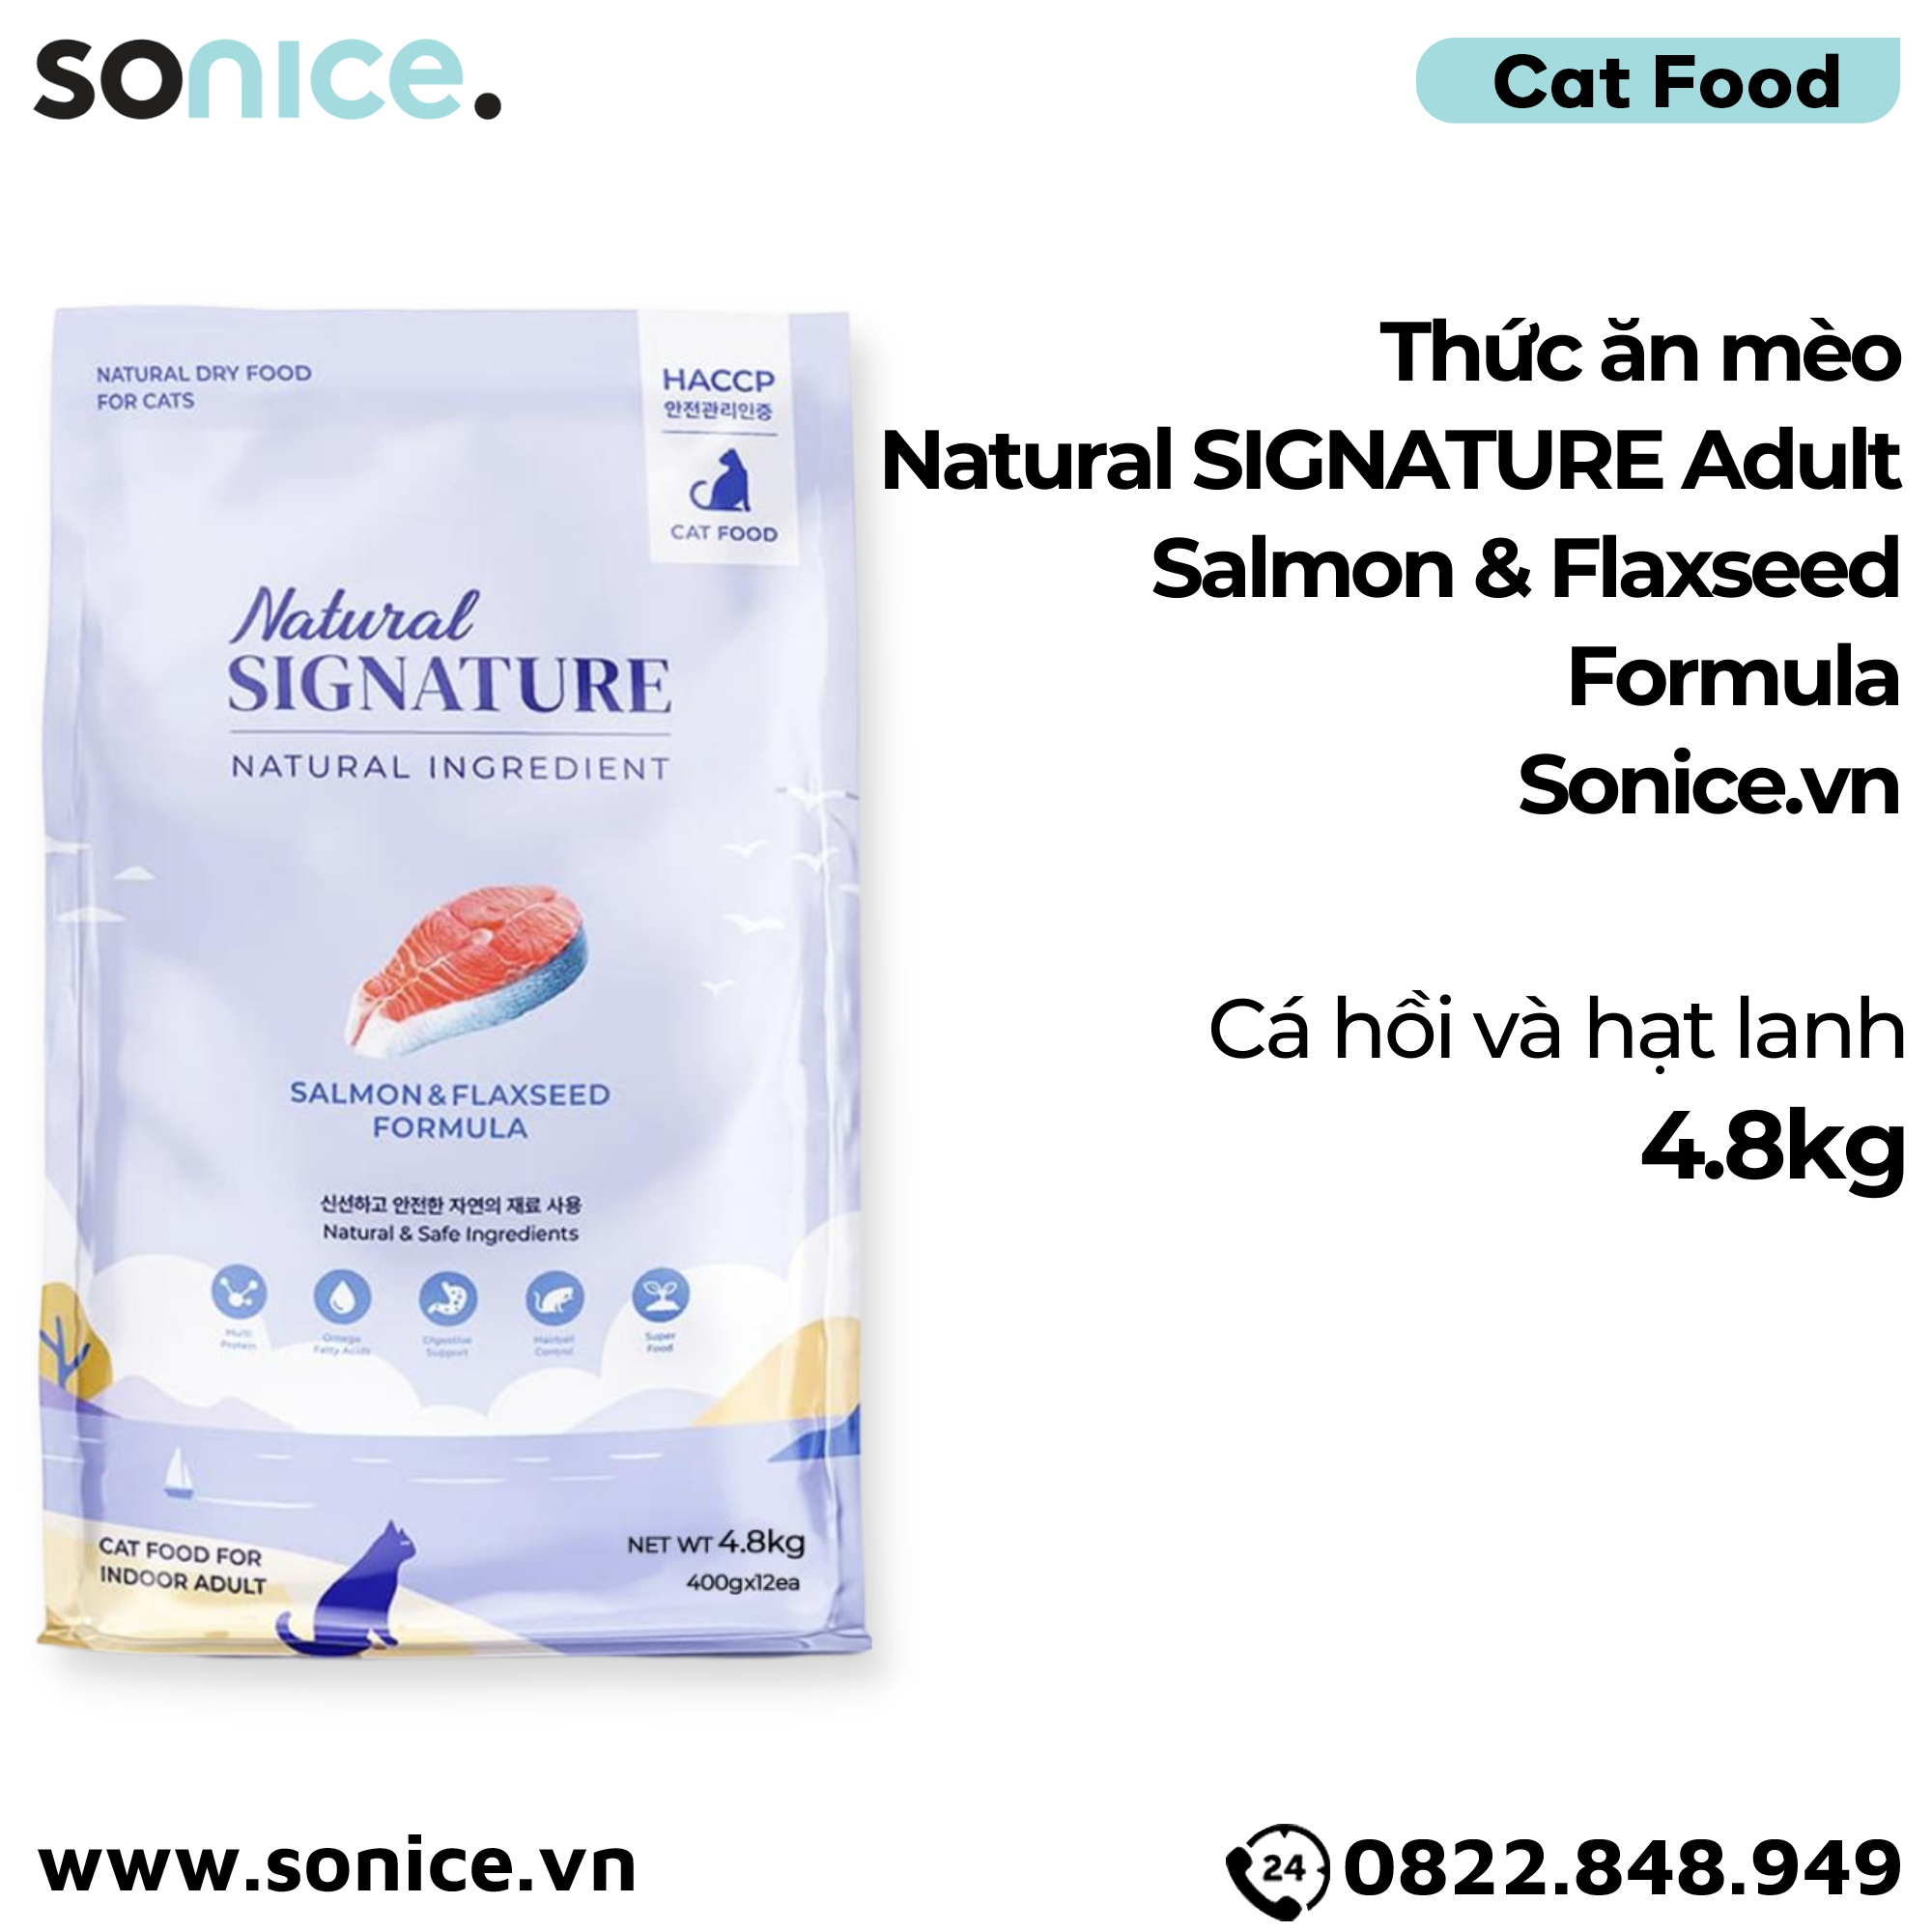  Thức ăn mèo Natural SIGNATURE Adult Salmon & Flaxseed Formula 4.8kg - Cá hồi và hạt lanh SONICE. 